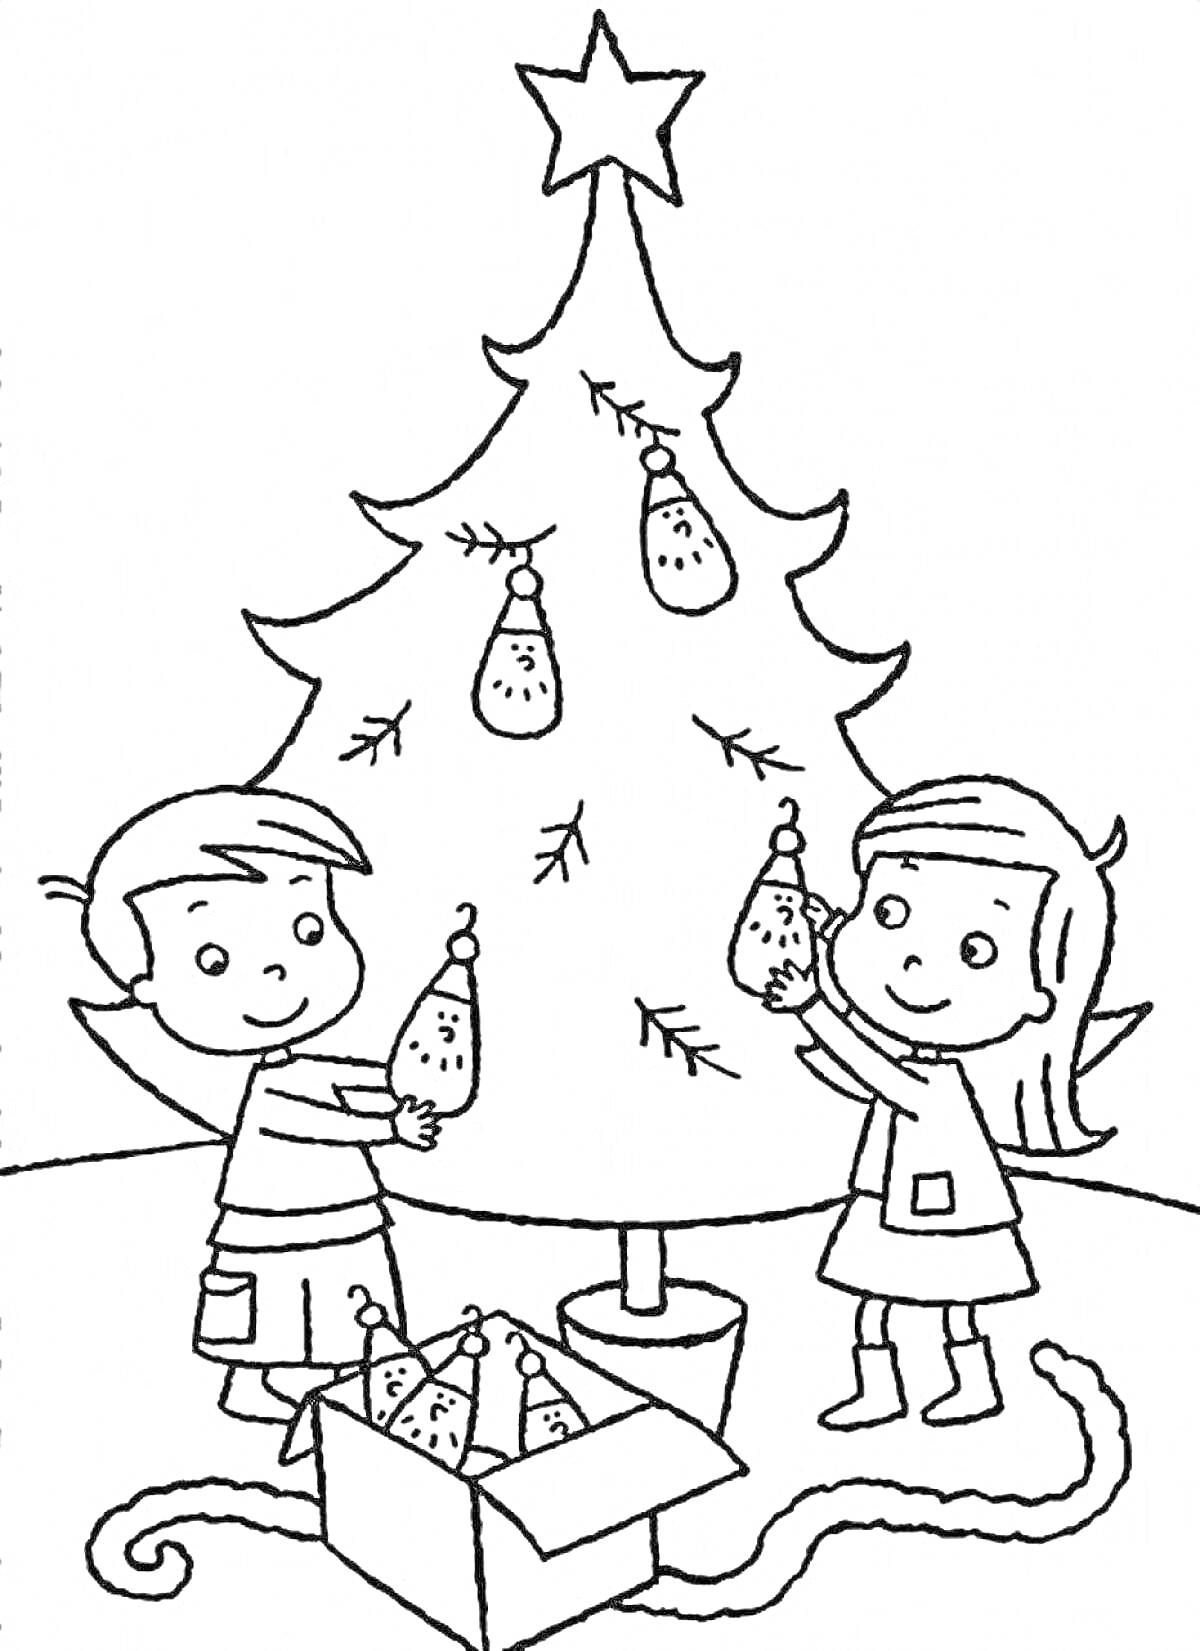 Раскраска Дети украшают новогоднюю ёлку игрушками, коробка с ёлочными игрушками, звезда на ёлке